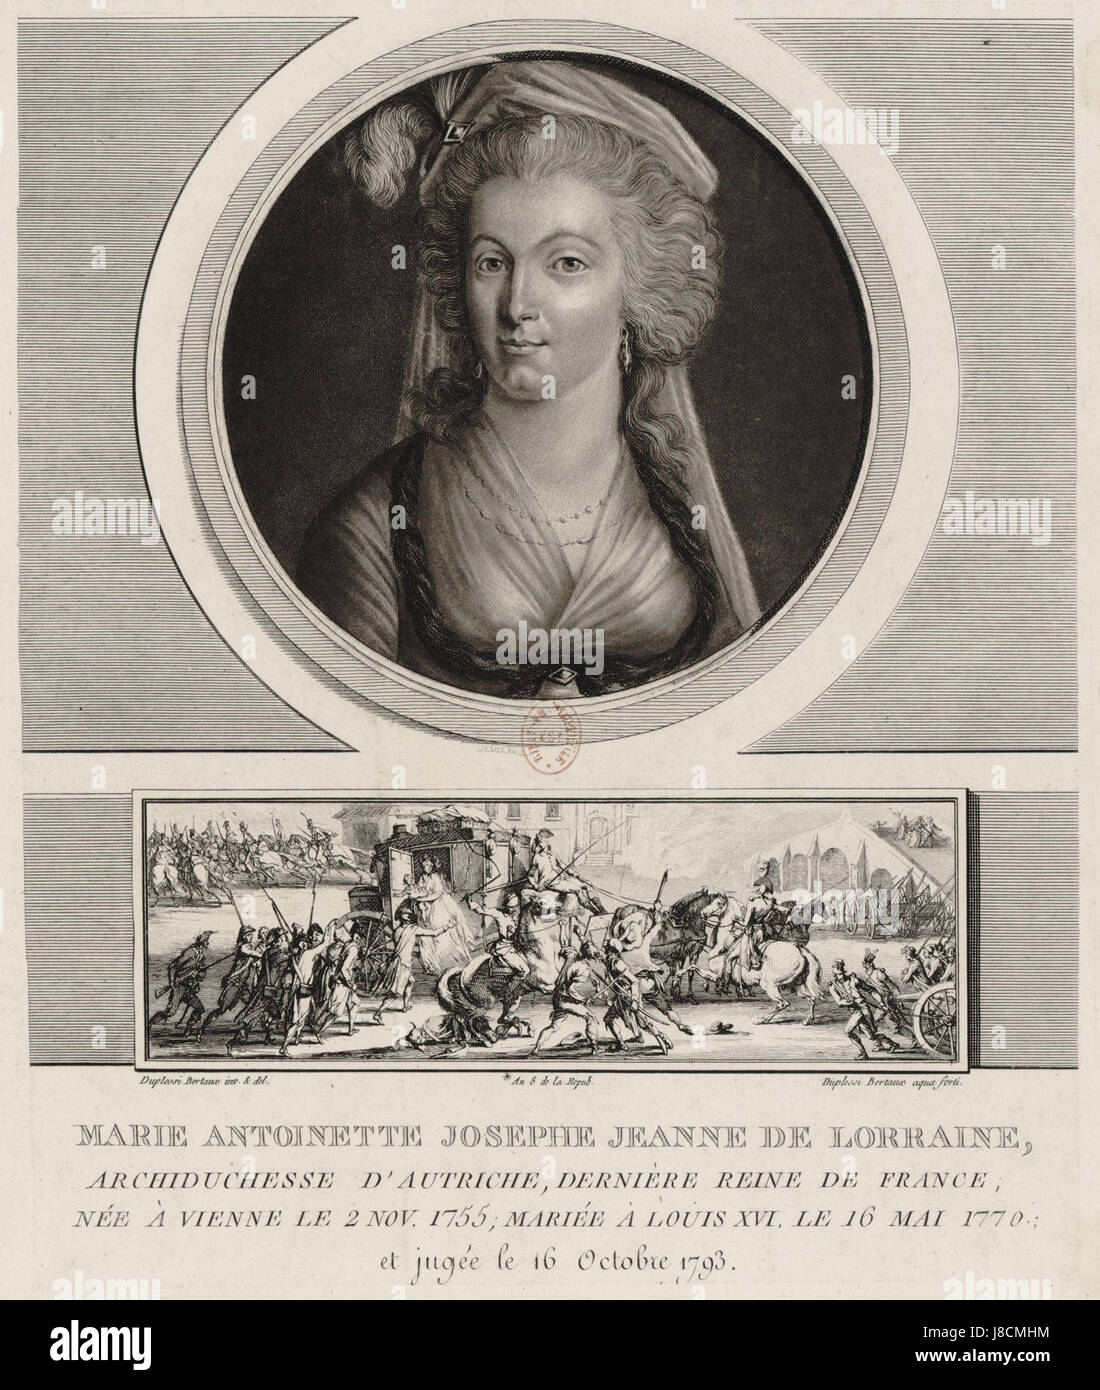 Marie Antoinette Josephe Jeanne de Lorraine Gravure Banque D'Images